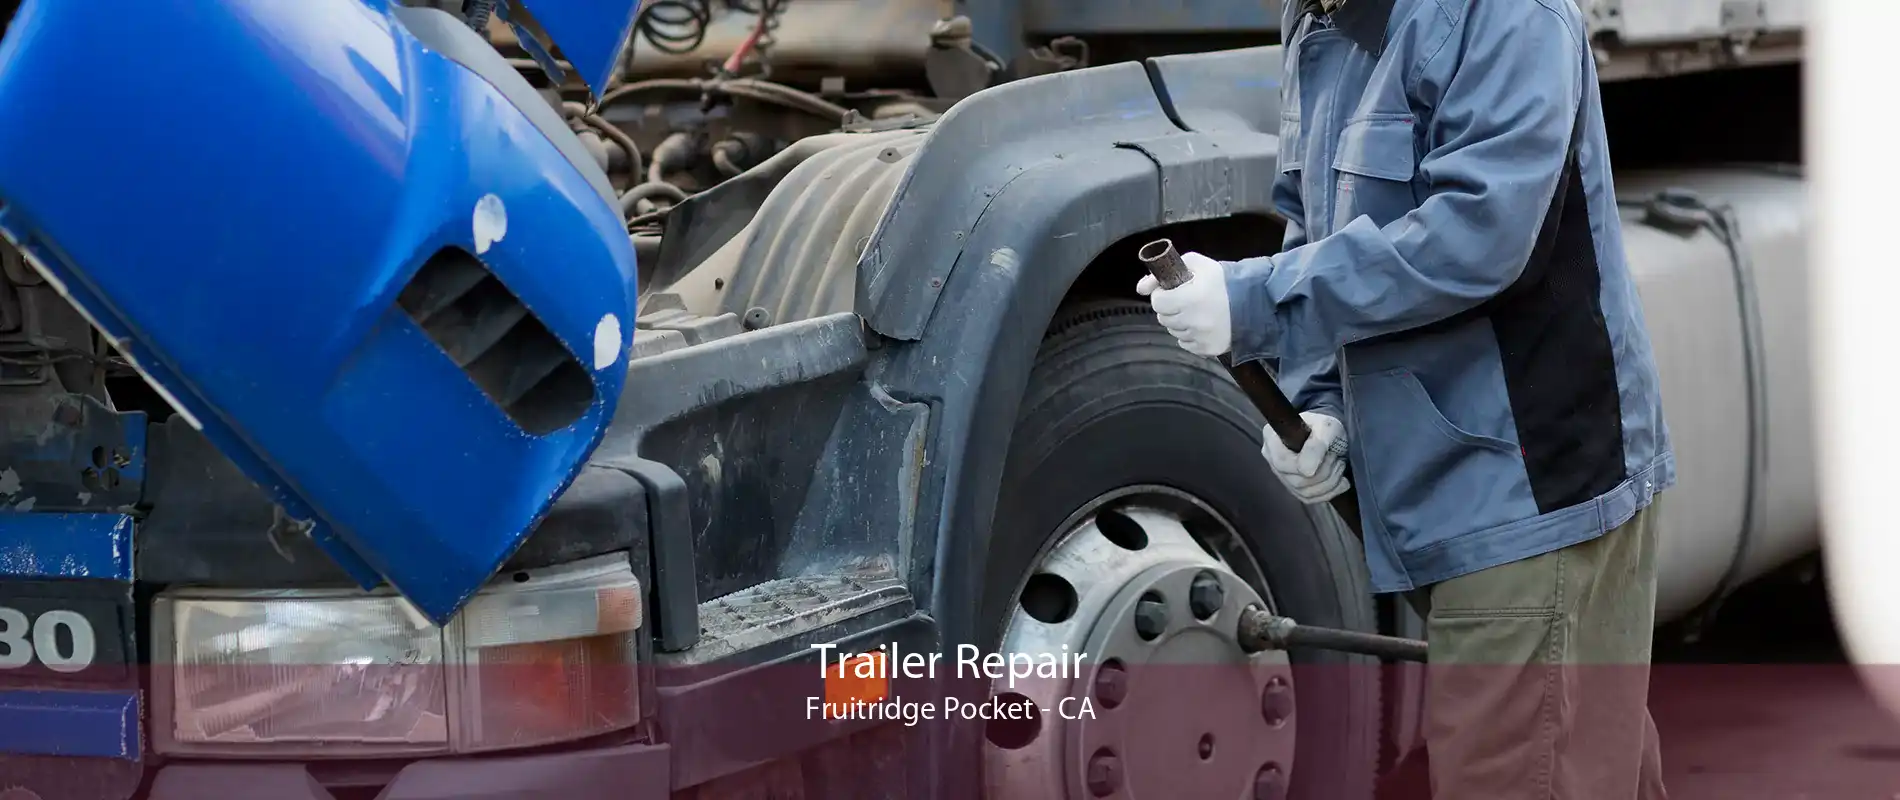 Trailer Repair Fruitridge Pocket - CA